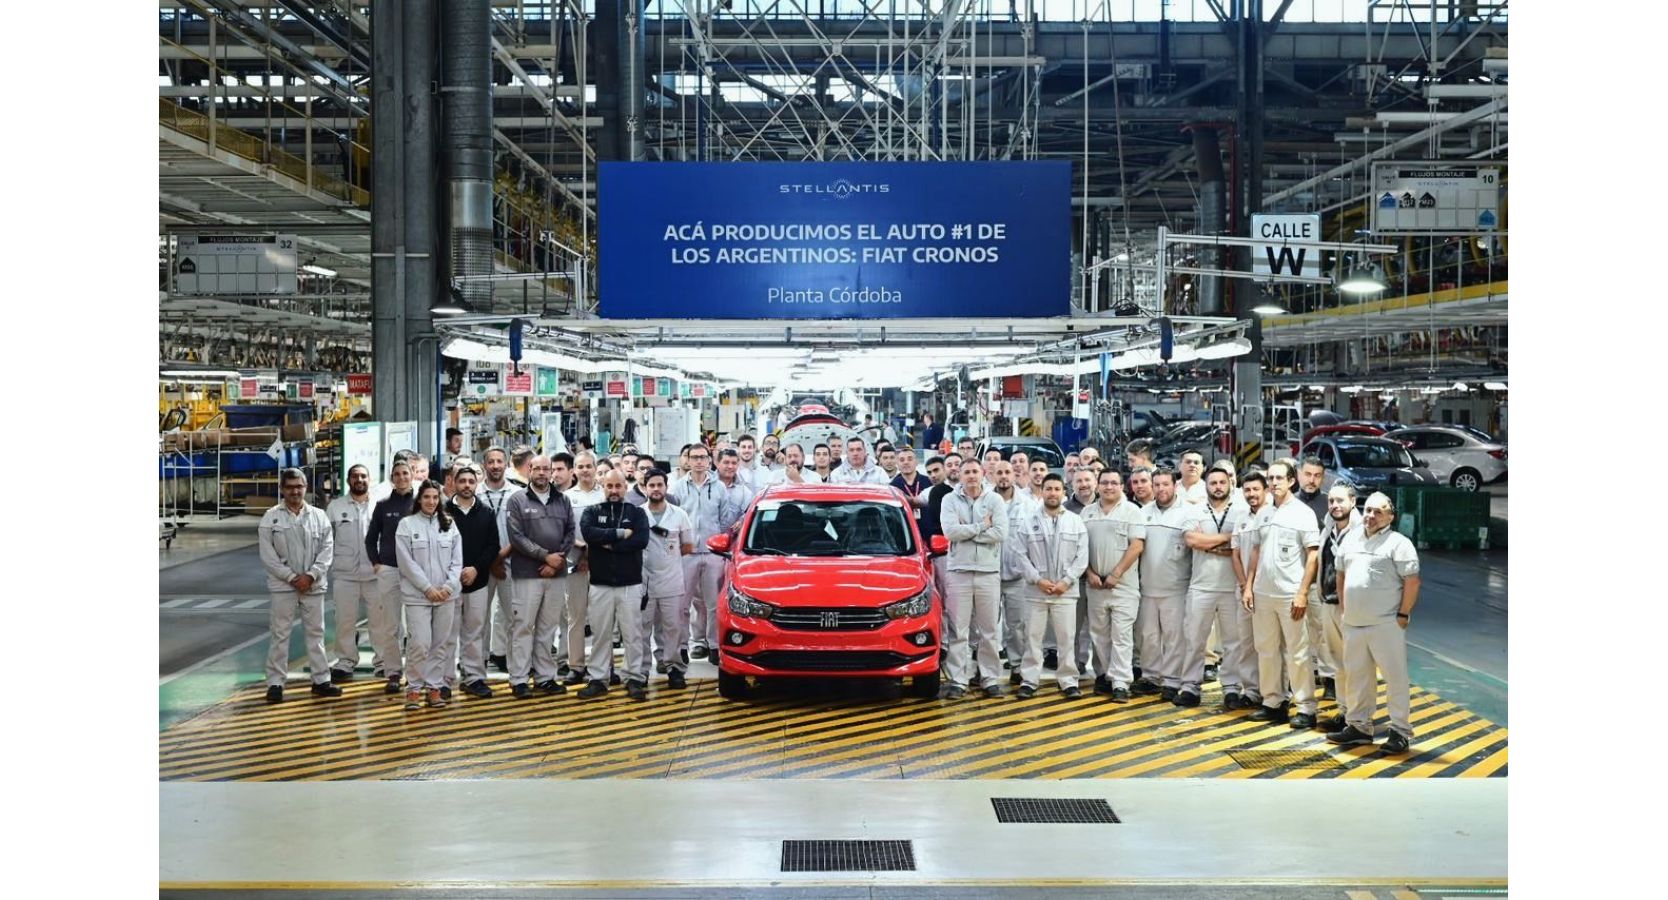 Stellantis alcanzó la producción del Fiat Cronos número 300.000 en su planta de Córdoba